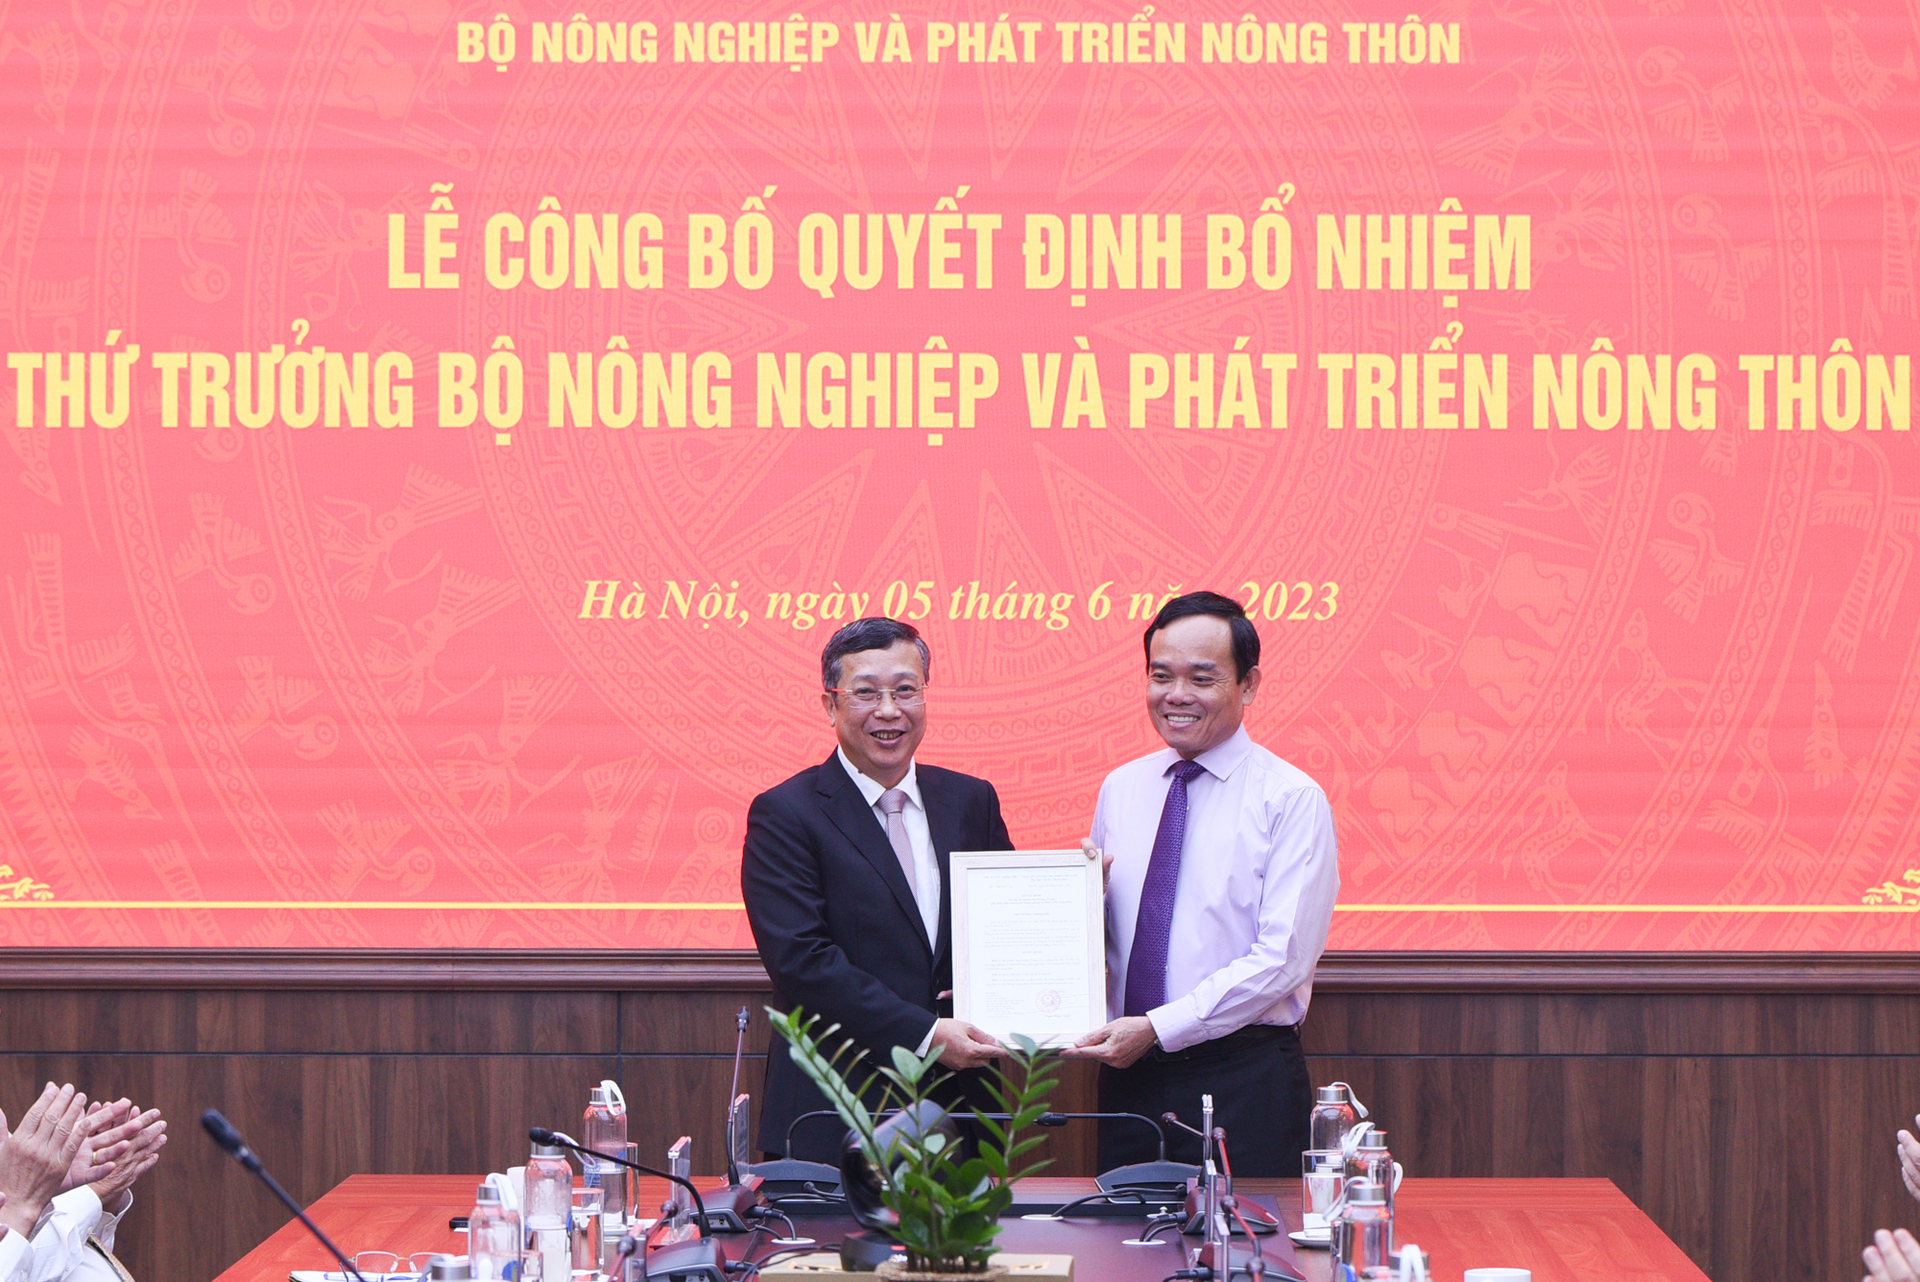 Phó Thủ tướng Trần Lưu Quang trao quyết định bổ nhiệm cho tân Thứ trưởng Hoàng Trung. Ảnh: Tùng Đinh.